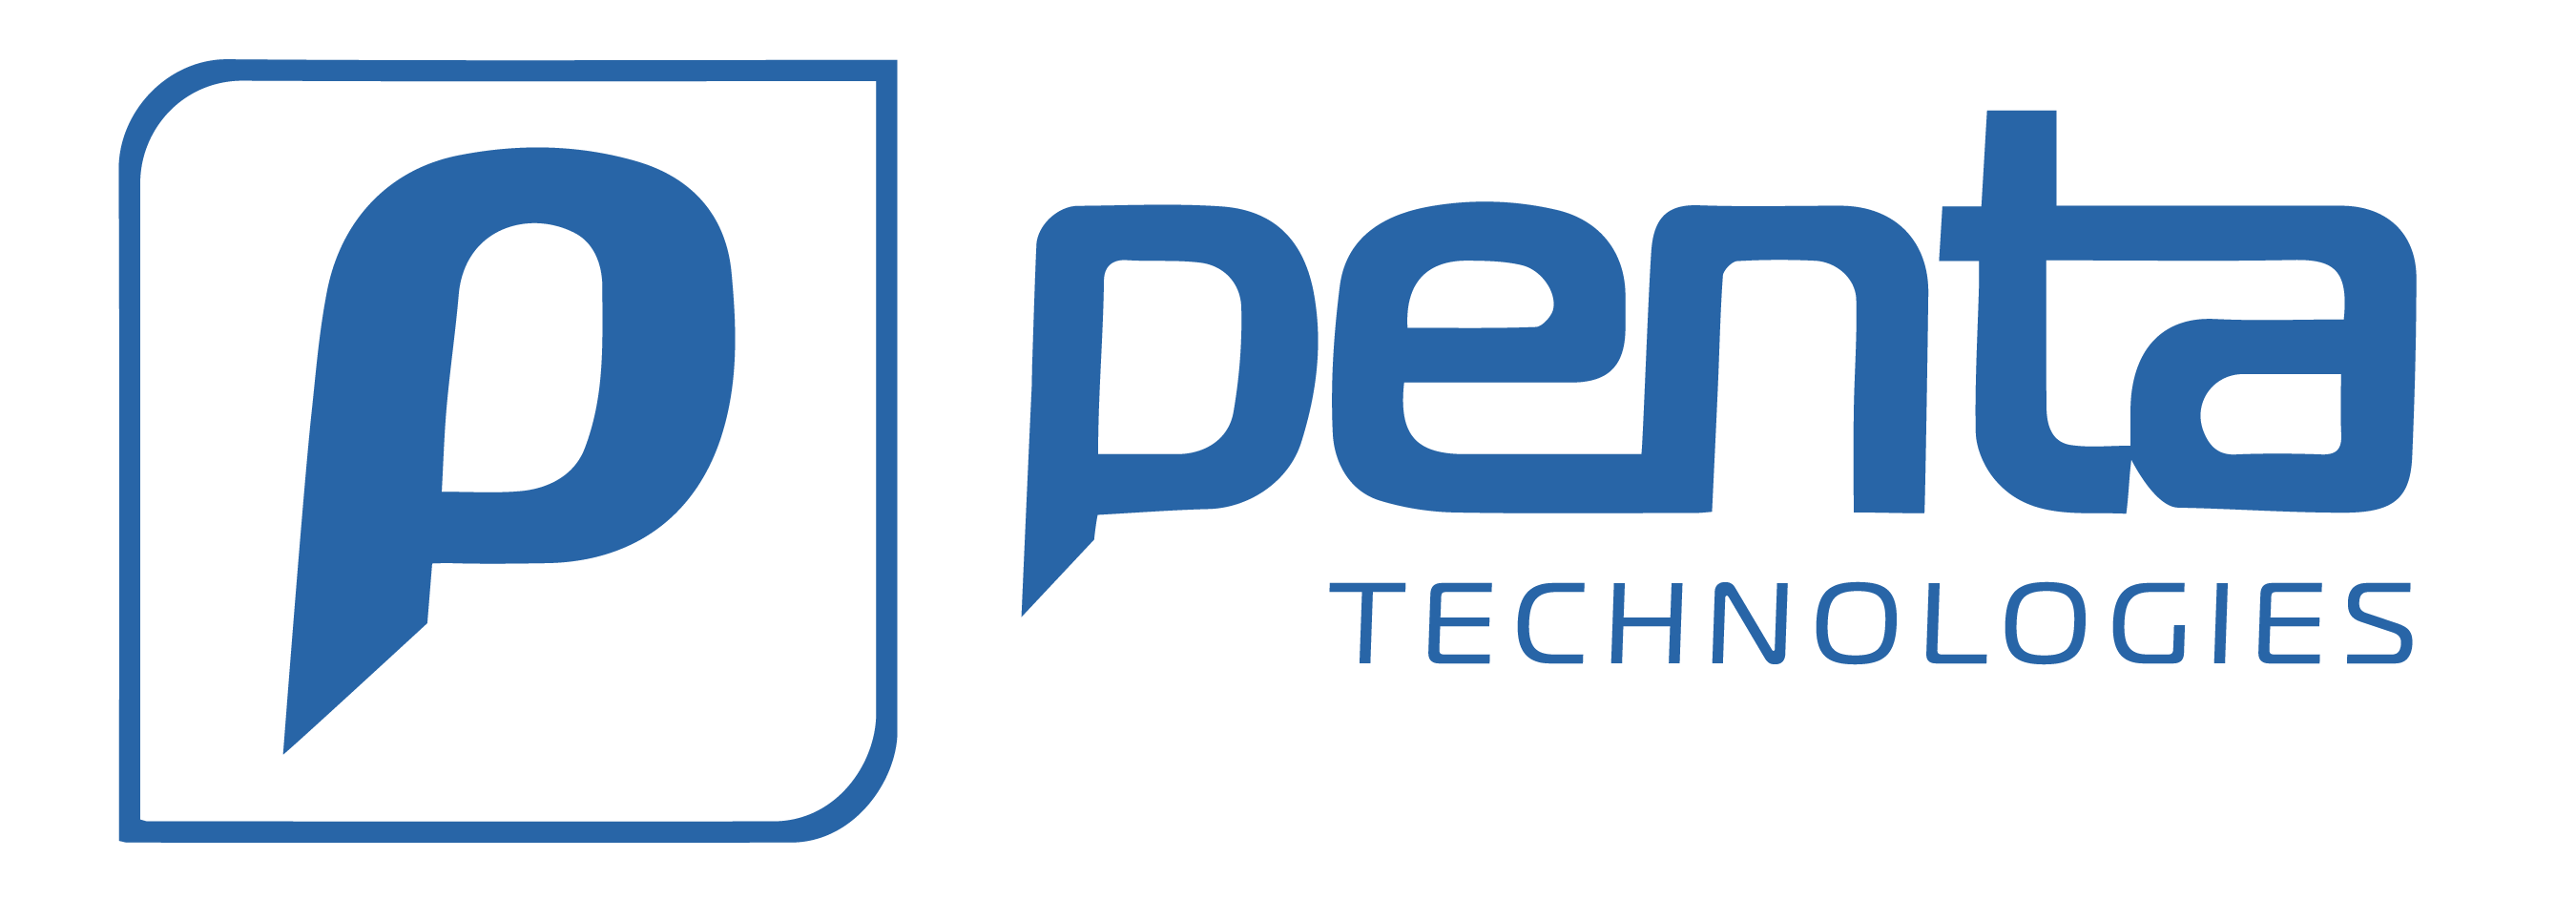 PENTA Announces Inte